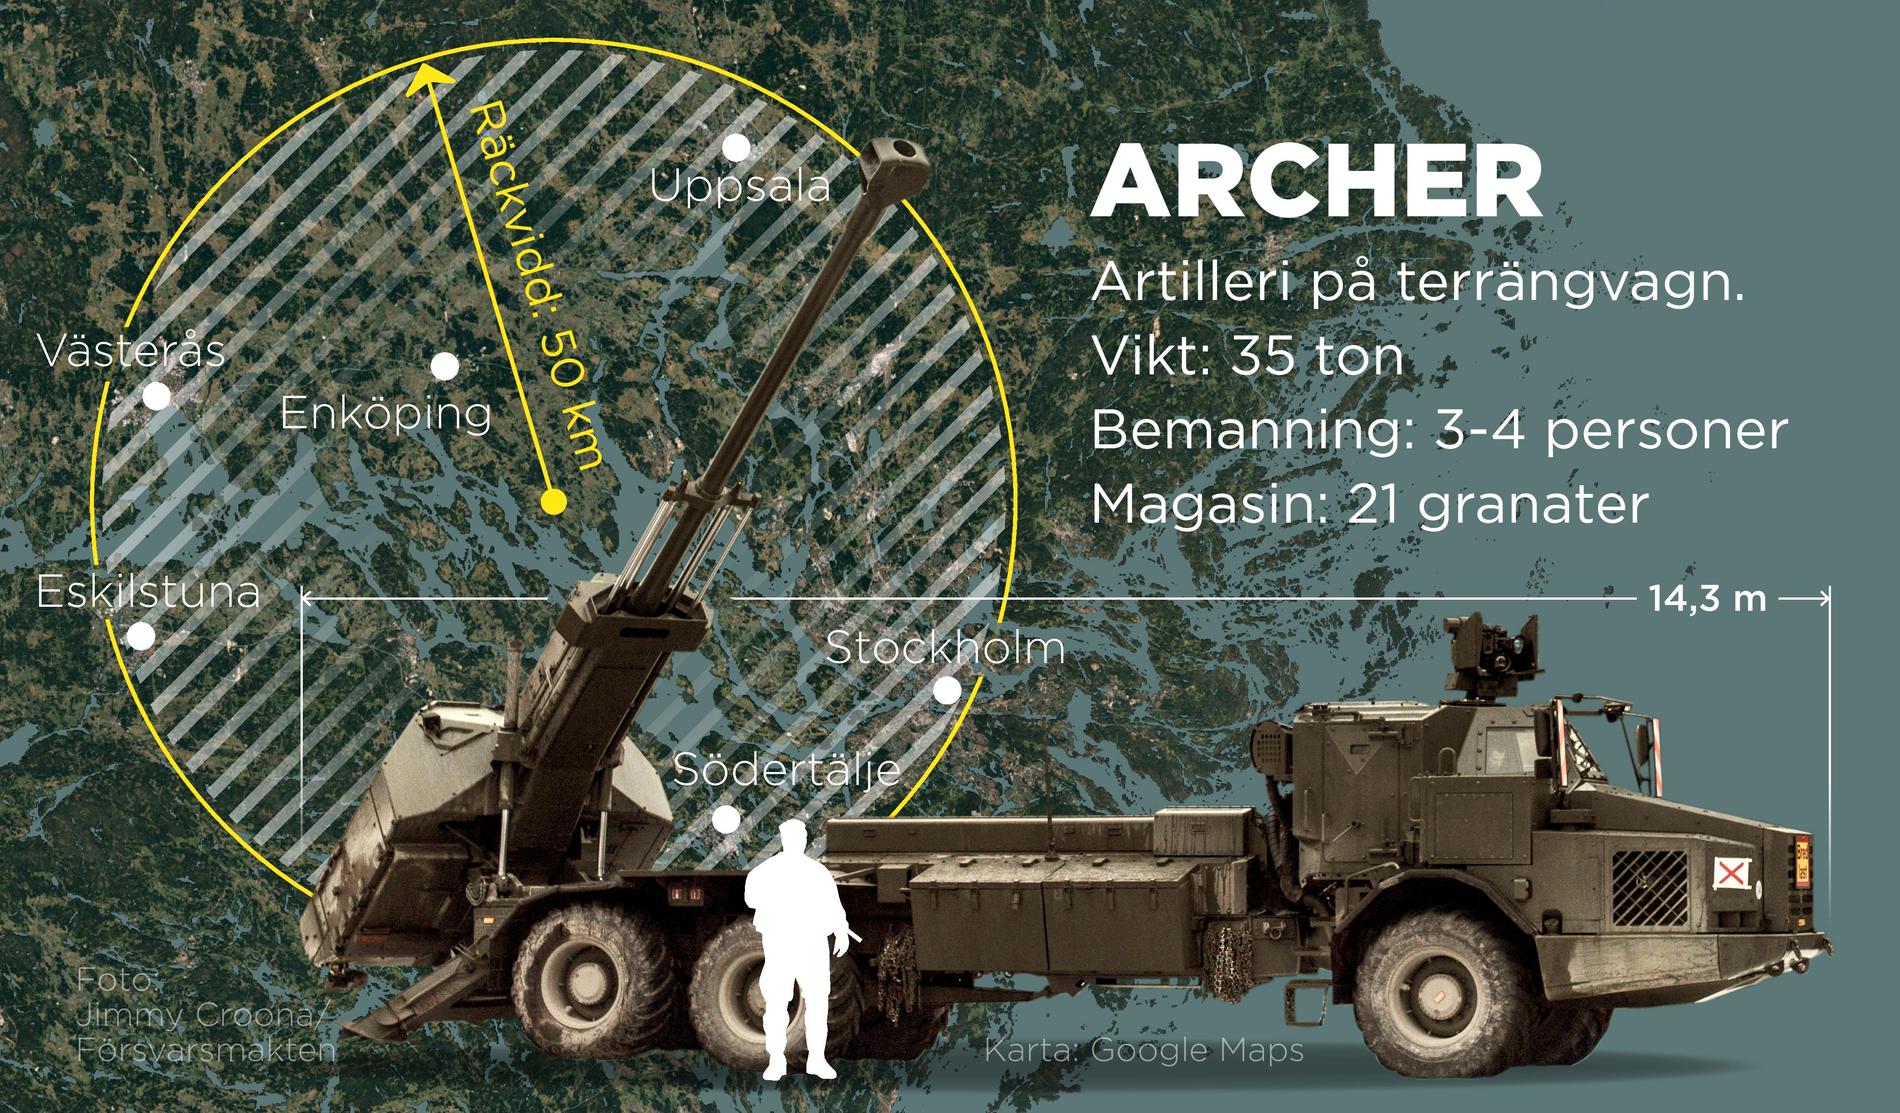 Försvarets artilleripjäs Archer är monterad på en terrängvagn, väger 35 ton och bemannas av tre till fyra personer.